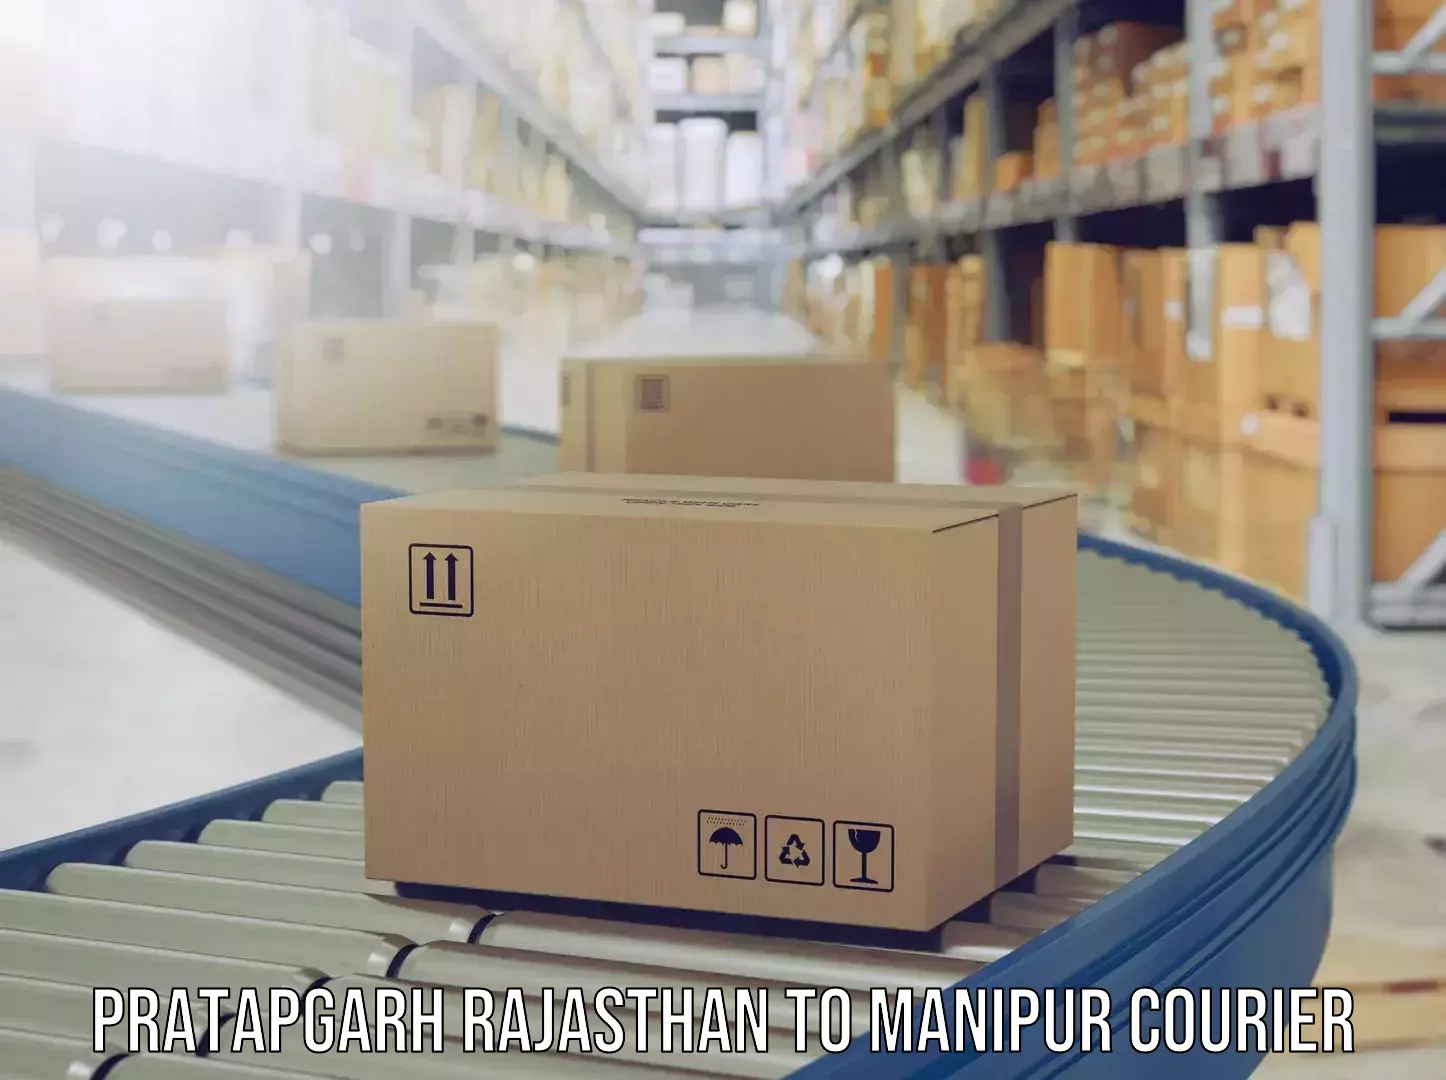 Luggage transport consultancy Pratapgarh Rajasthan to Manipur